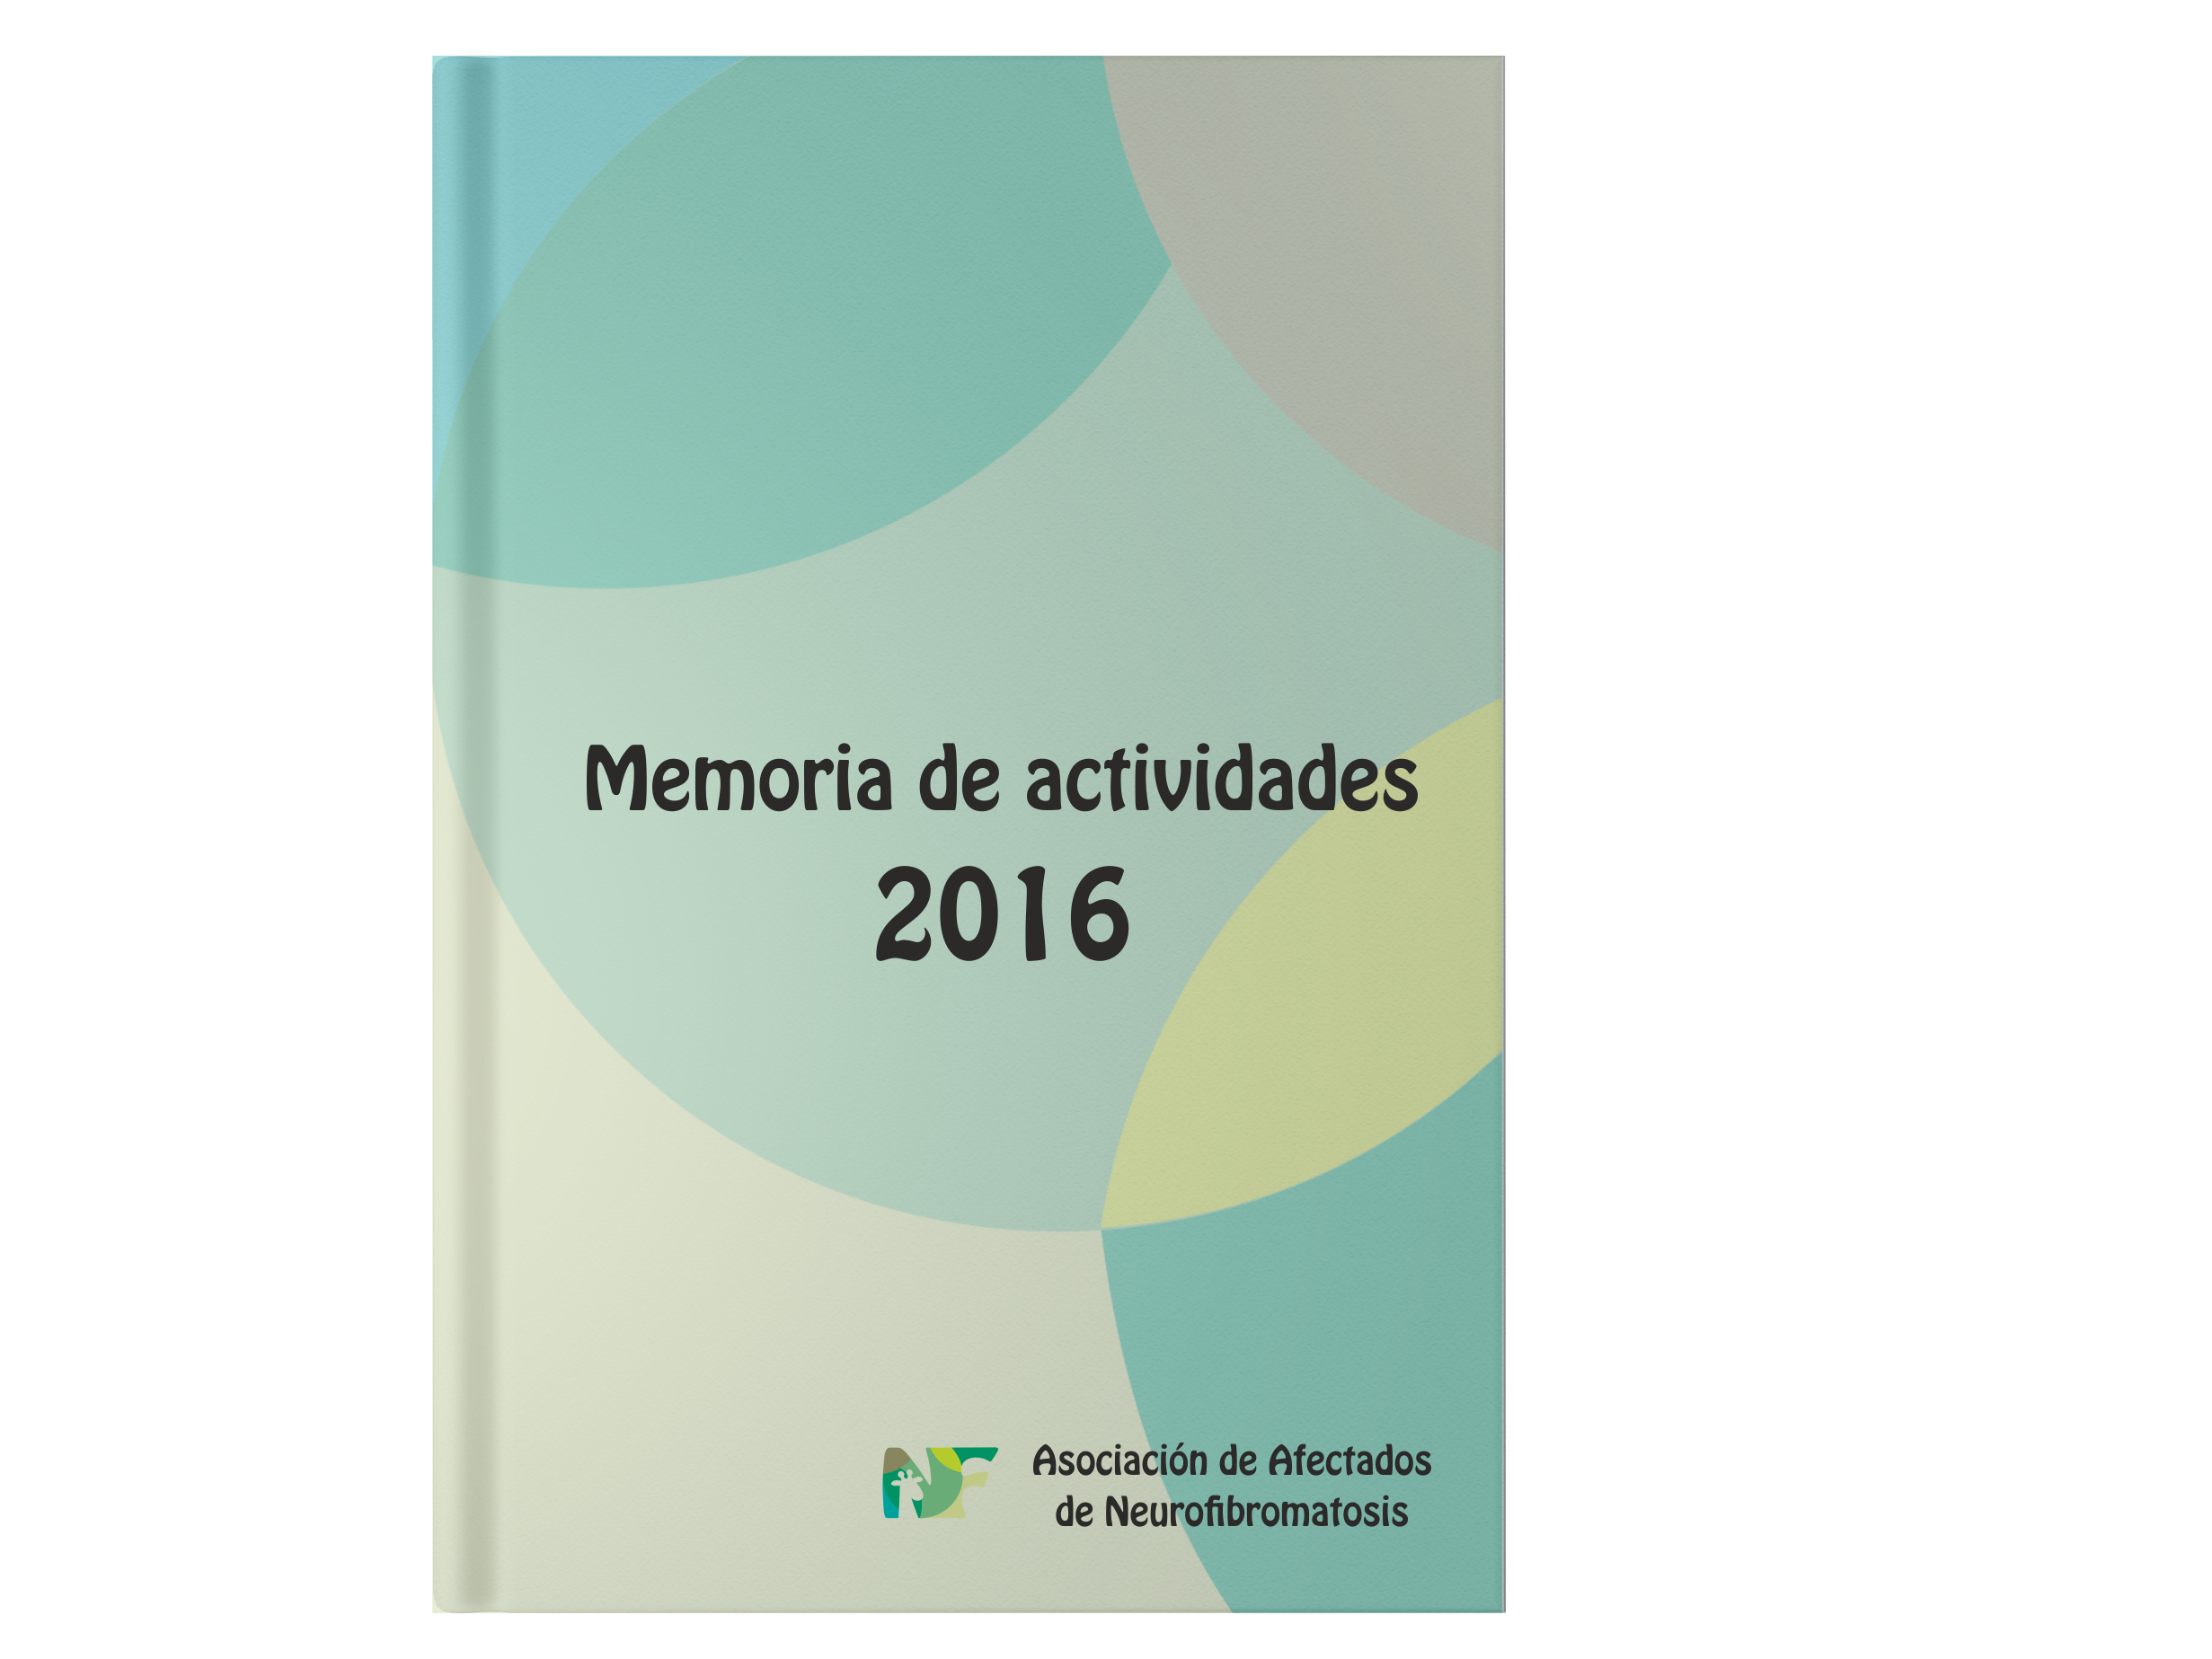 MEmoria de Actividades AANF 2016